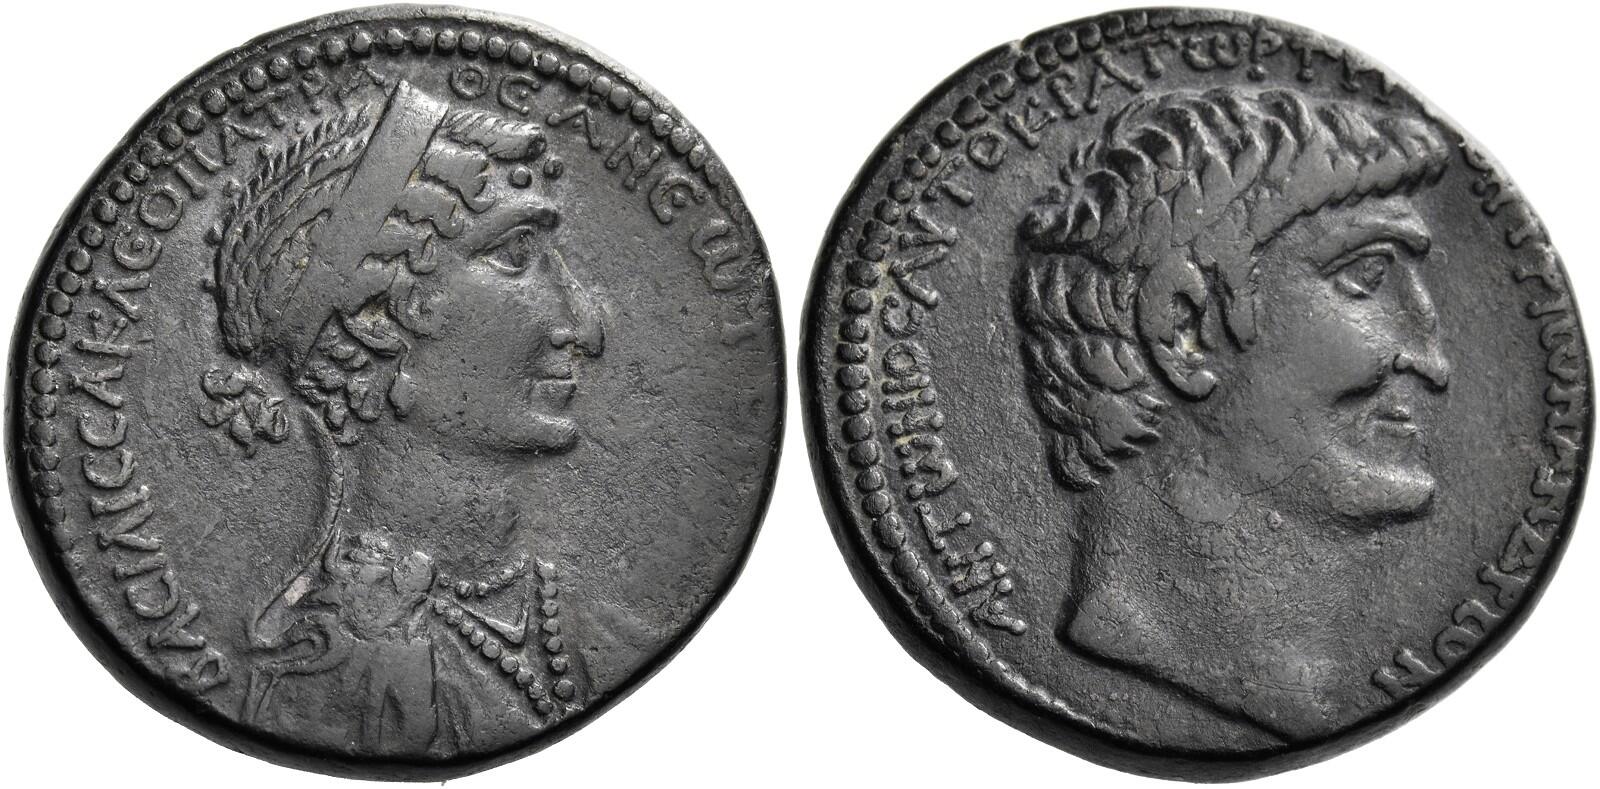 Roman Coin 3-G Roman Empire Most Famous Romance Mark Antony & Cleopatra 